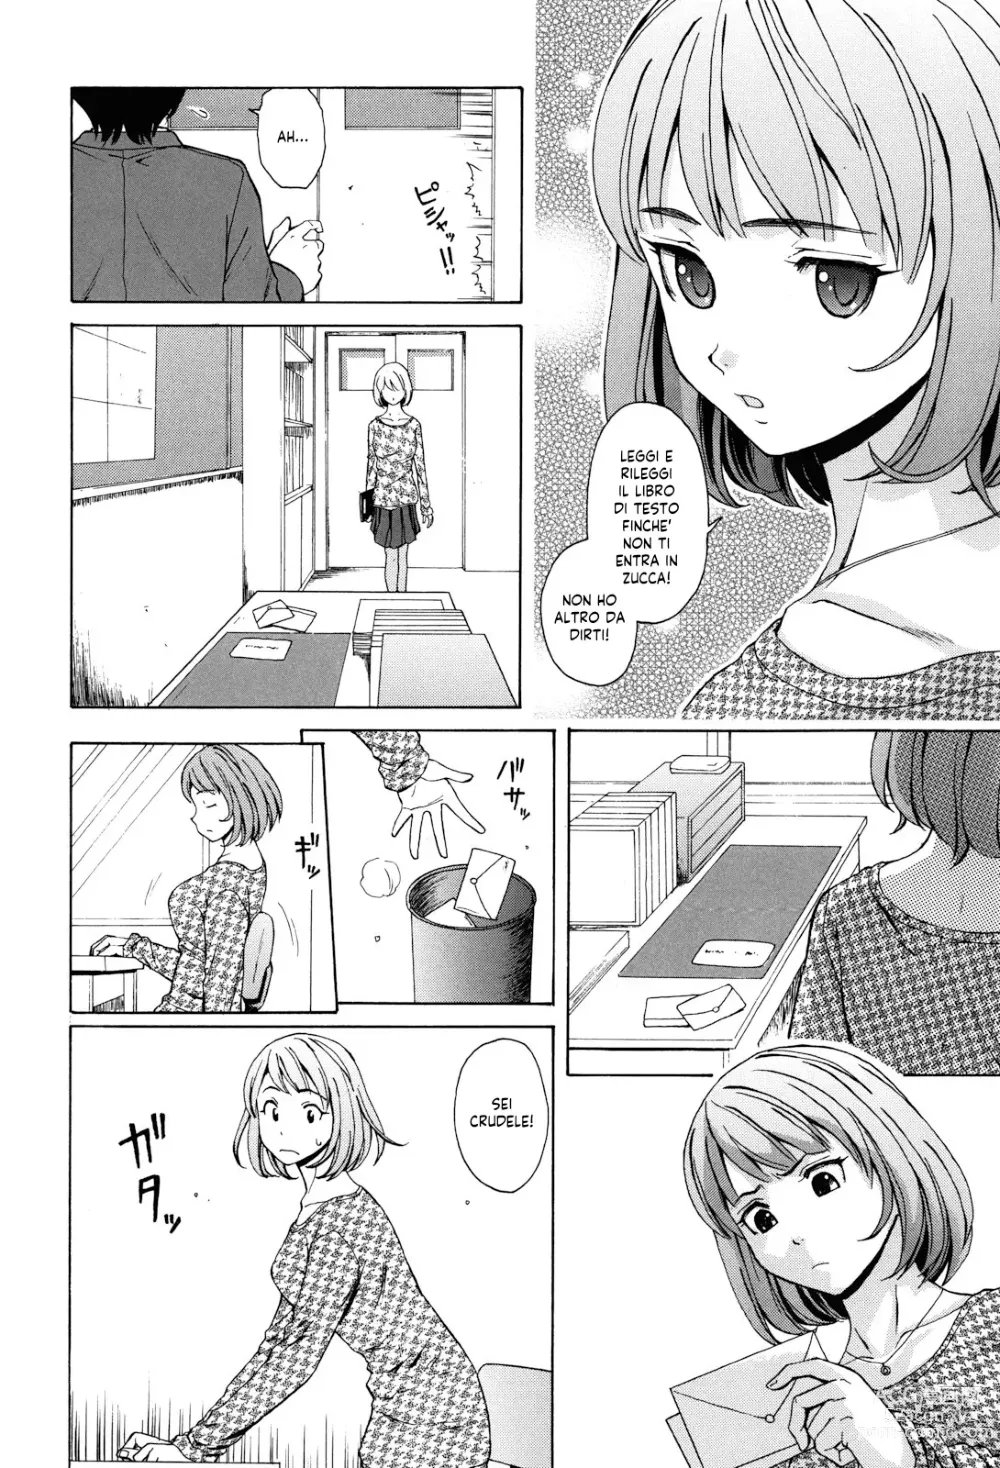 Page 7 of manga Sei Gentilmente Desiderato dalla tua Prof (decensored)